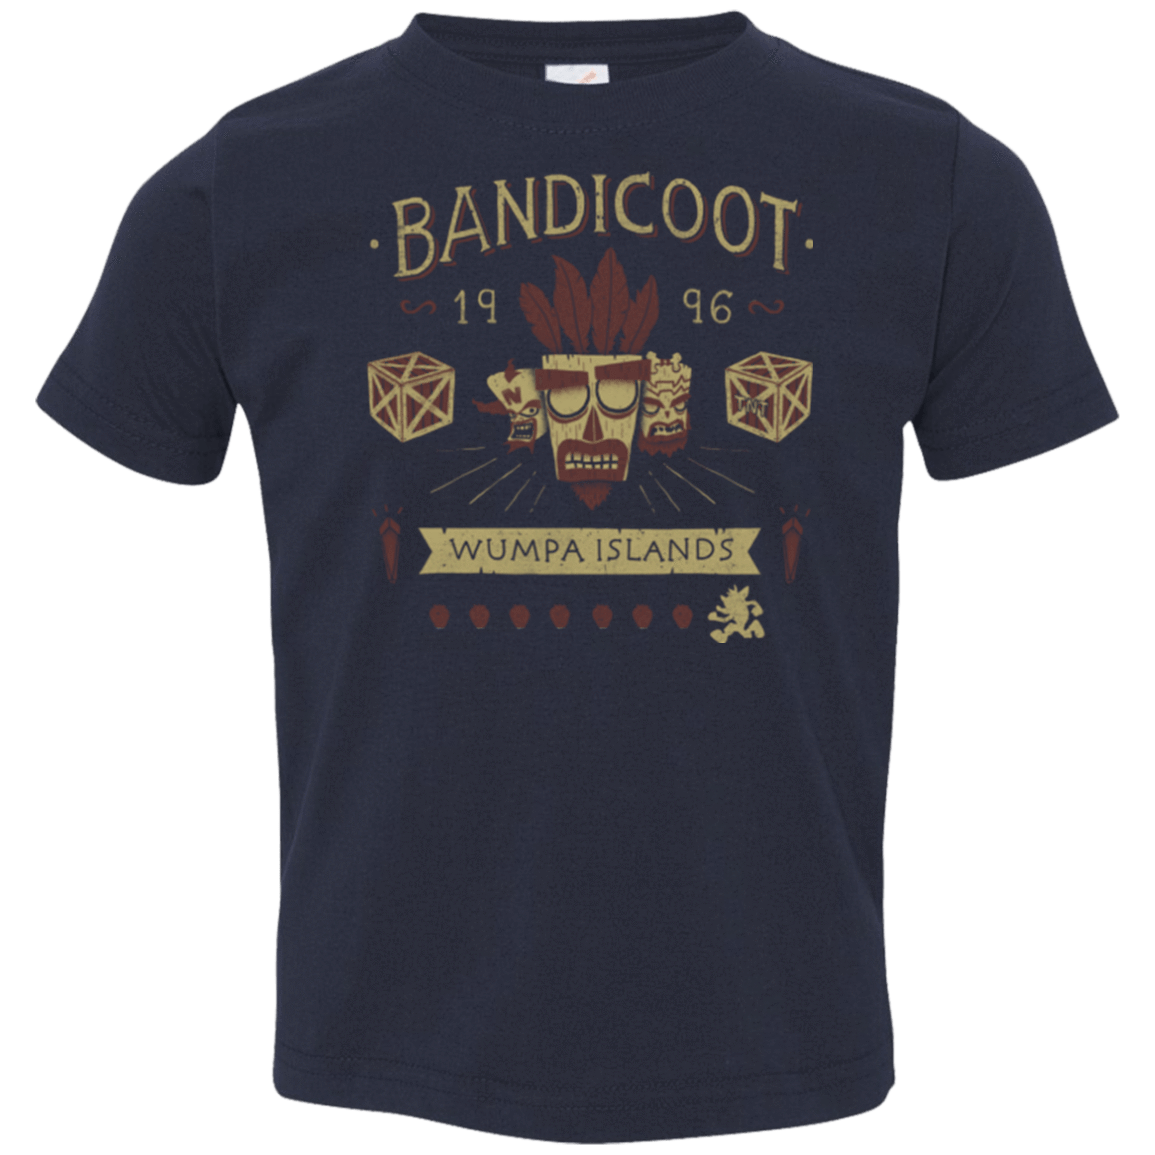 T-Shirts Navy / 2T Bandicoot Time Toddler Premium T-Shirt